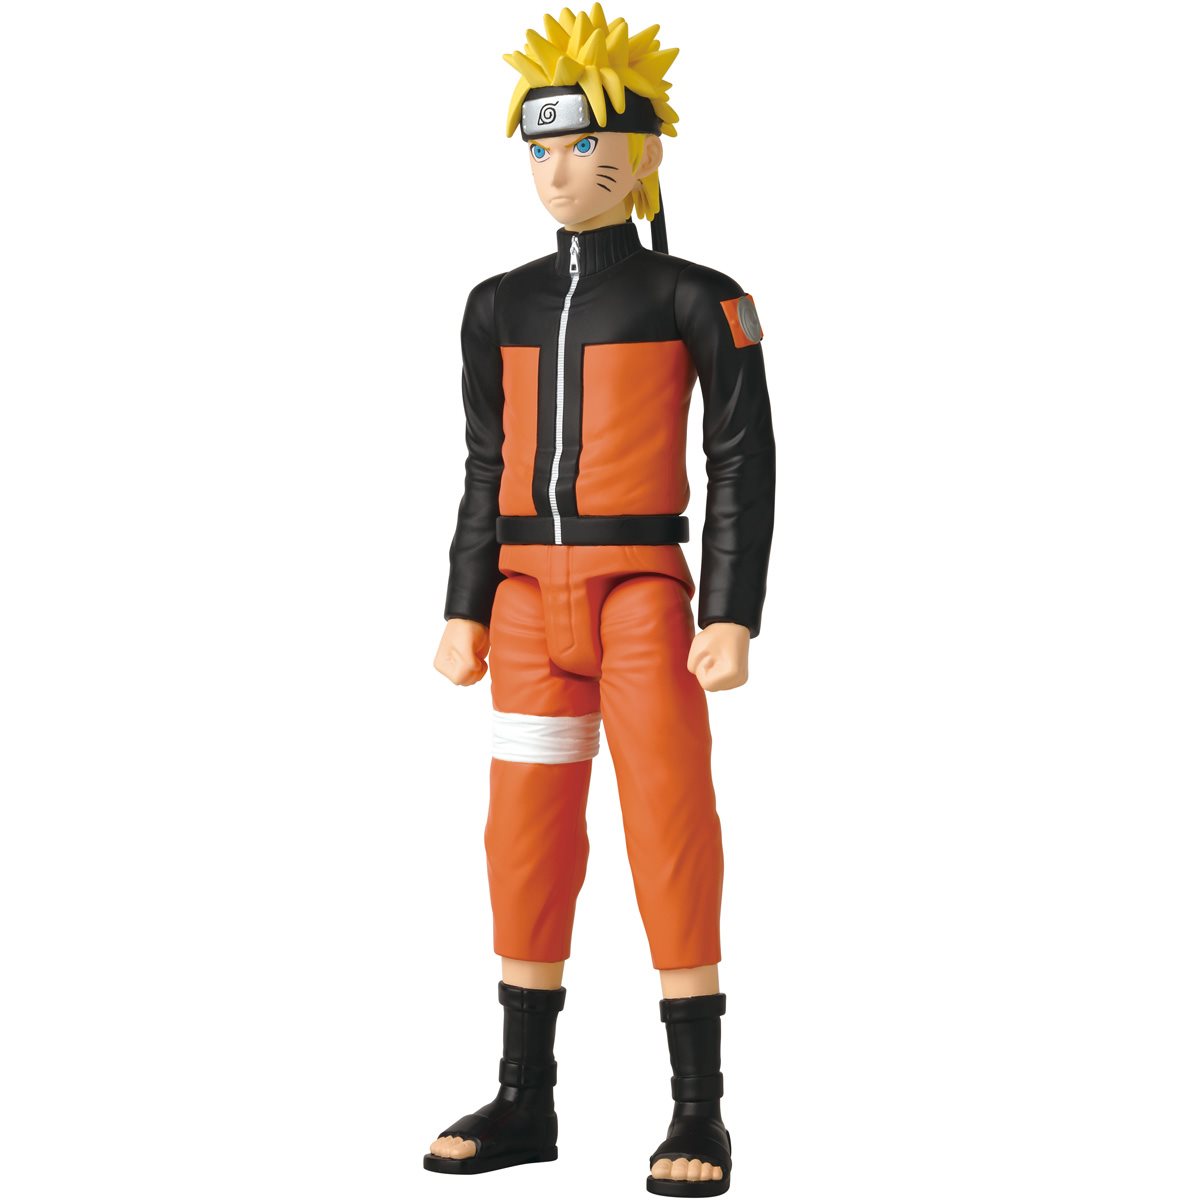 Bandai Namco Anime Heroes Mega: Naruto - Naruto Uzumaki Figura de Accion